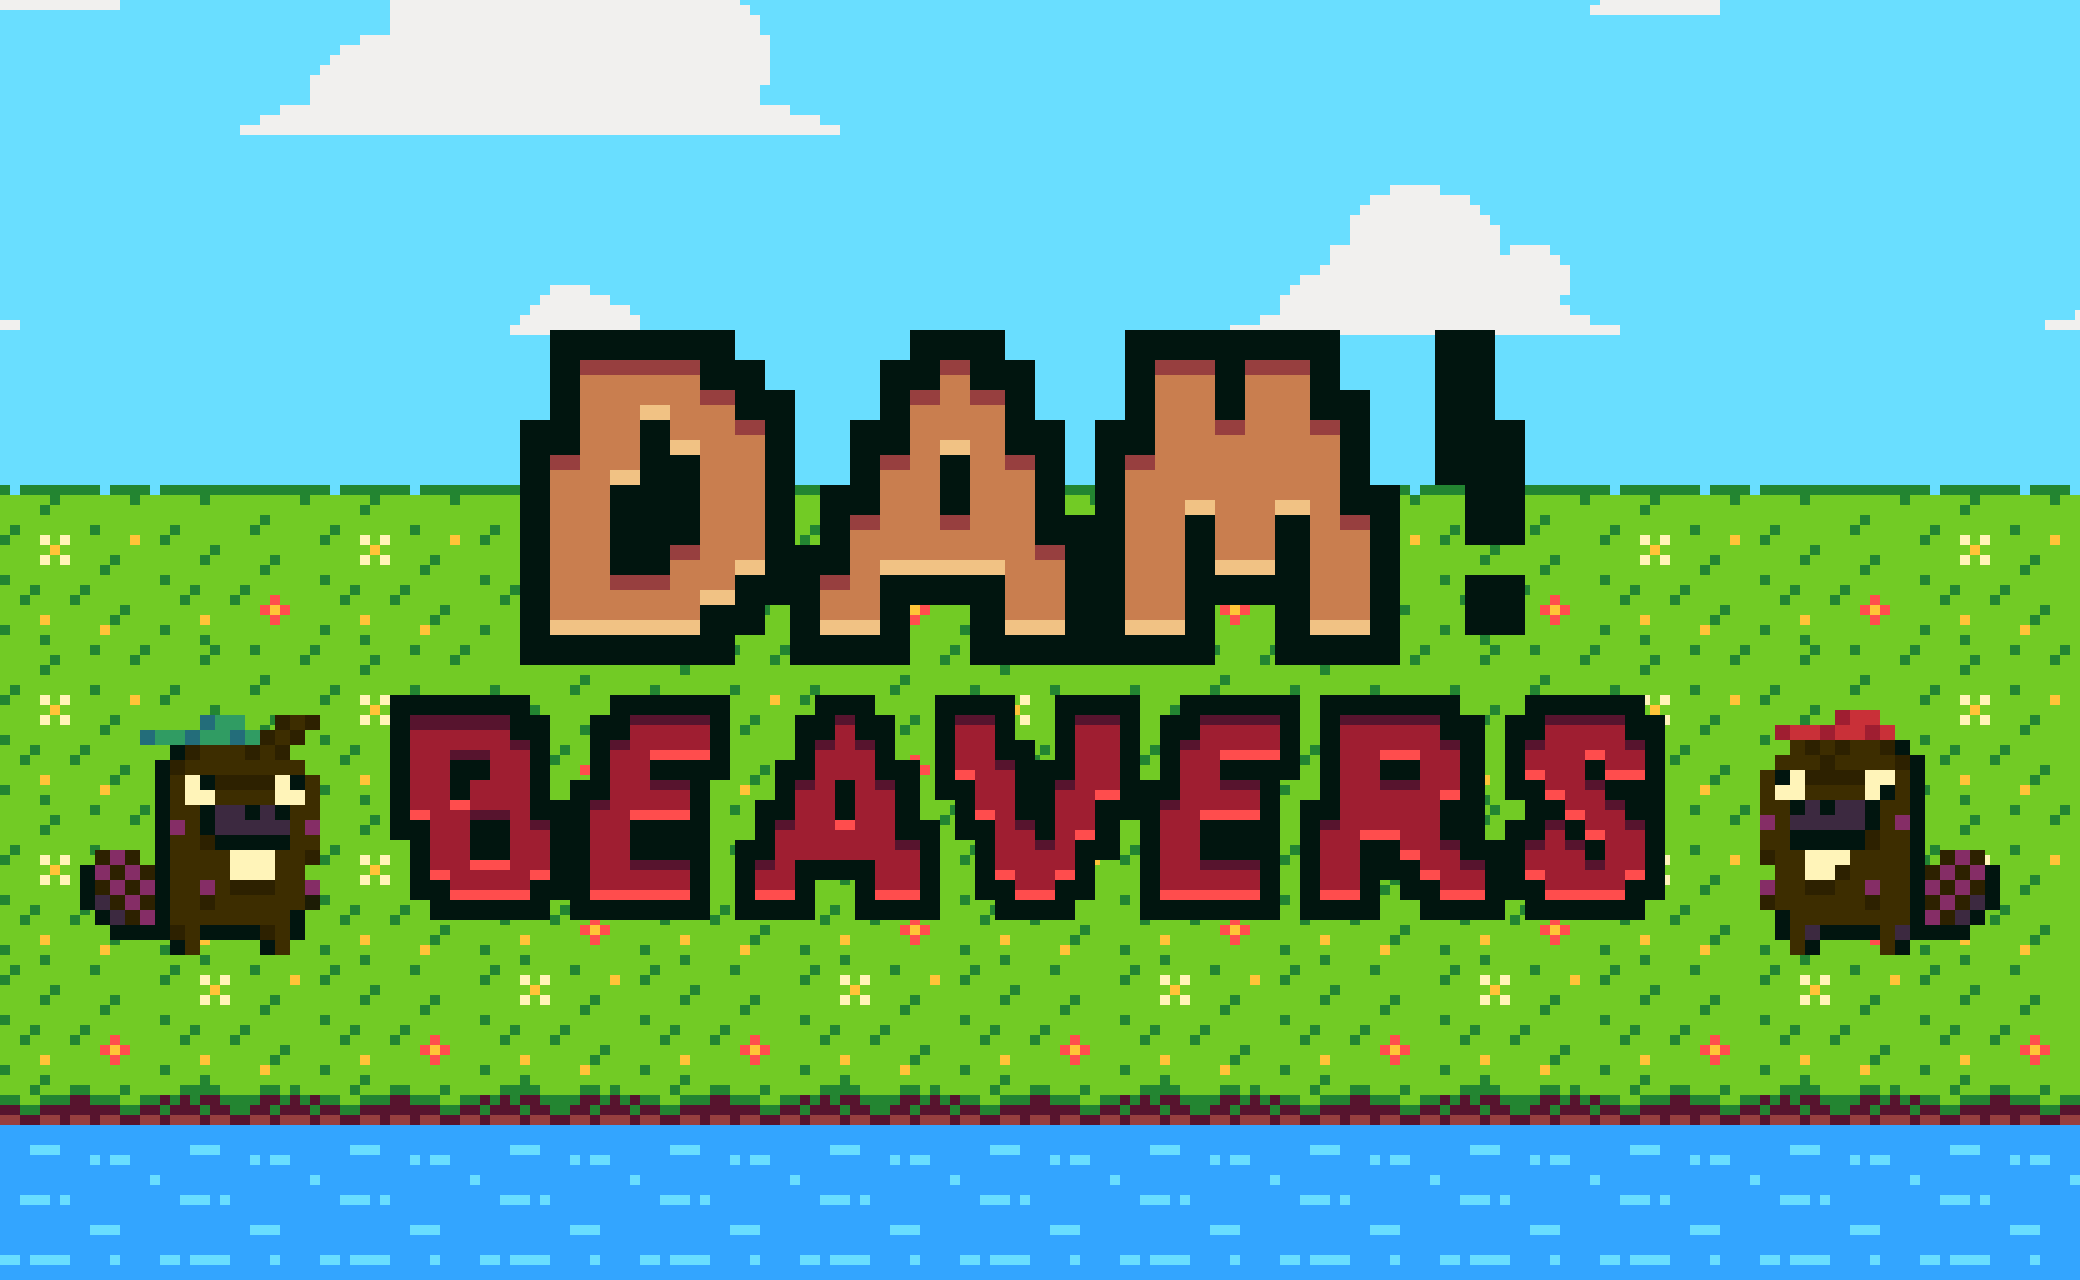 DAM! Beavers